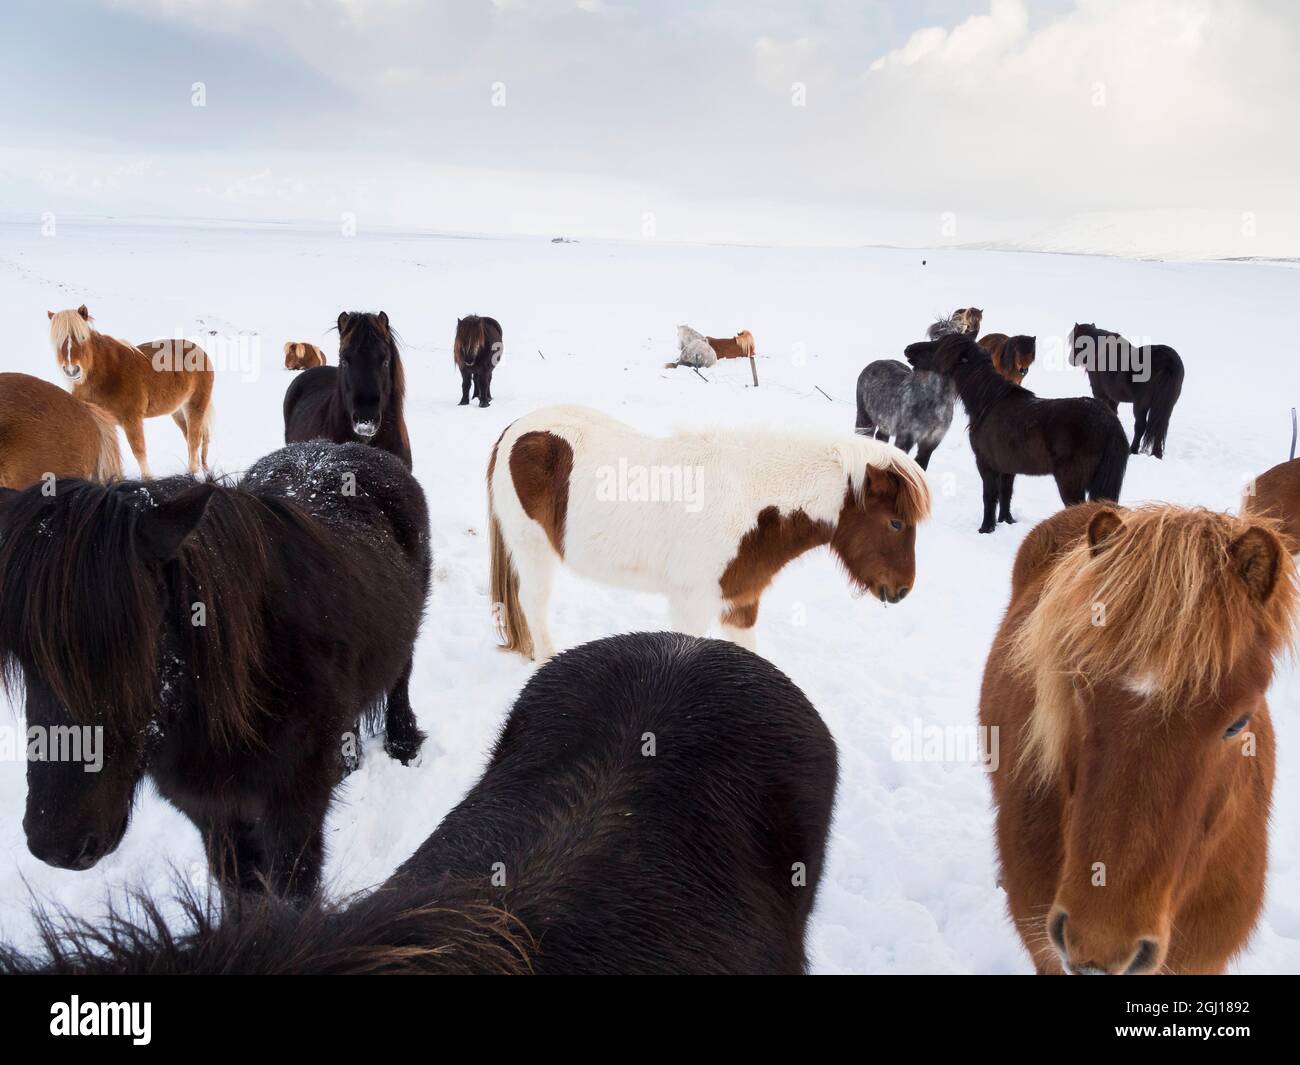 Isländisches Pferd im Neuschnee. Traditionelle Rasse für Island und geht zurück auf die Pferde der alten Wikinger, Island. Stockfoto